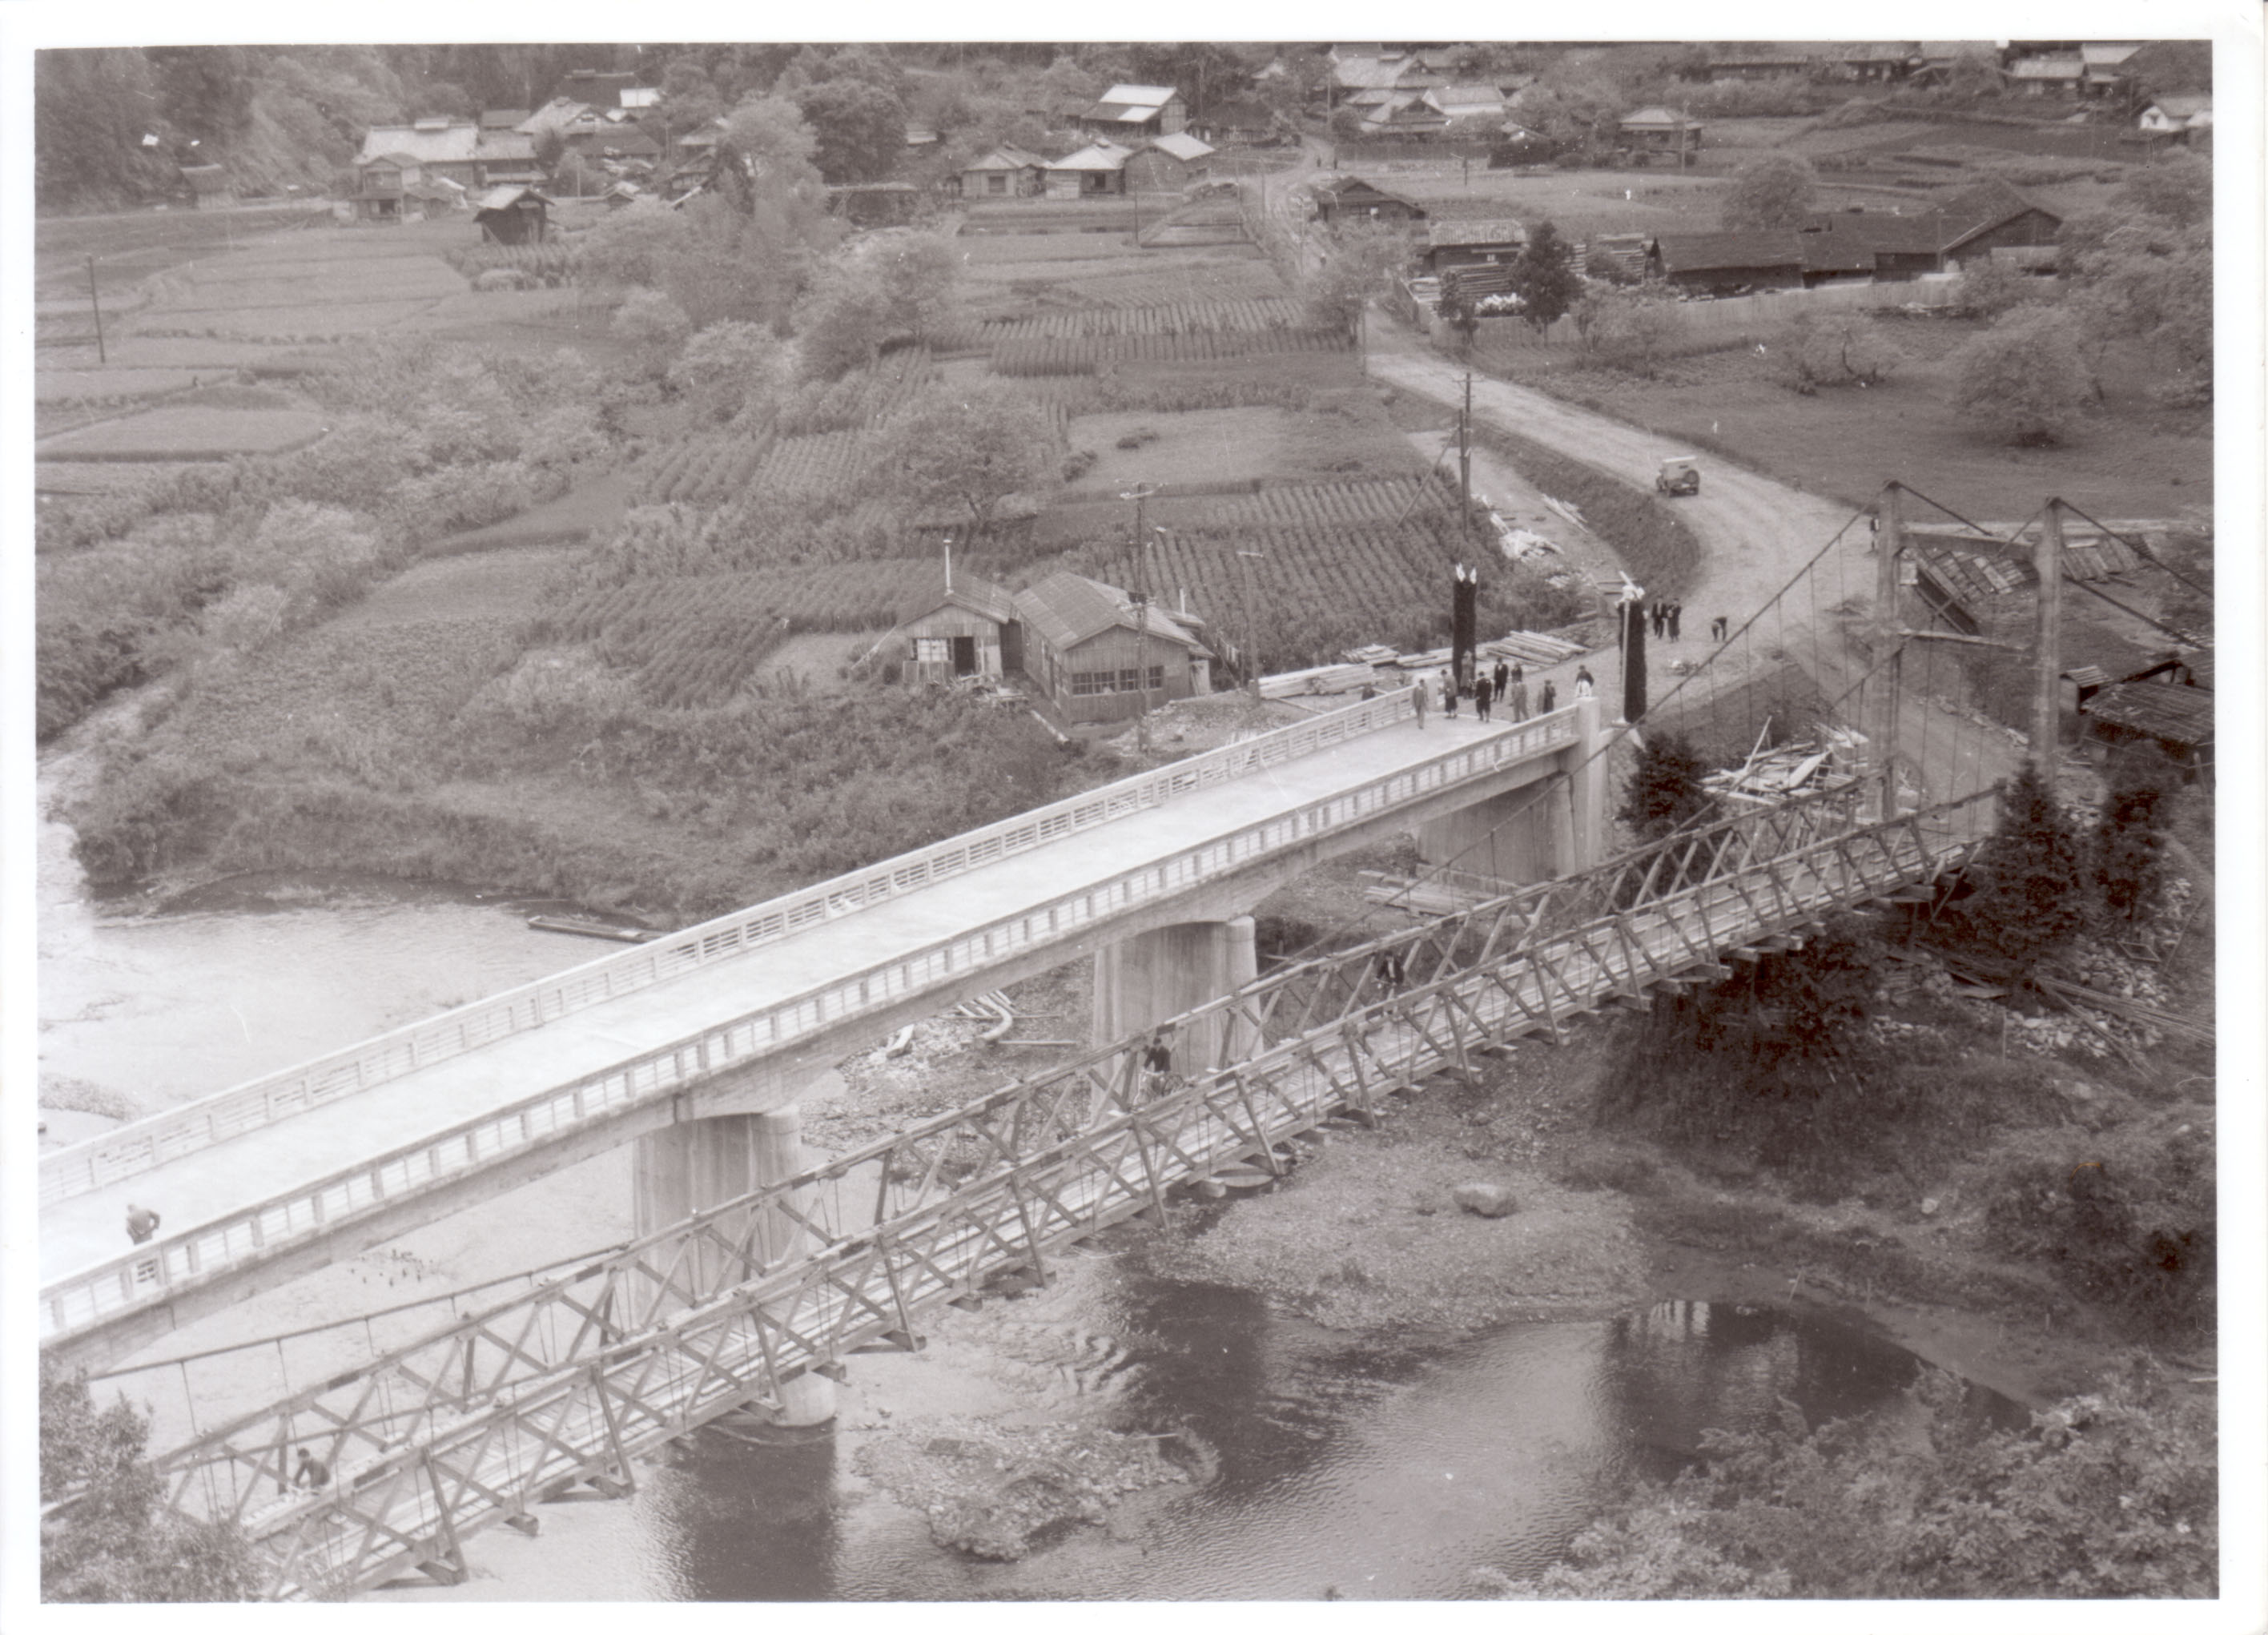 07_井戸沢橋の開通式。上流側に見えるのが旧橋(昭和29年5月、板津弥吉氏撮影)